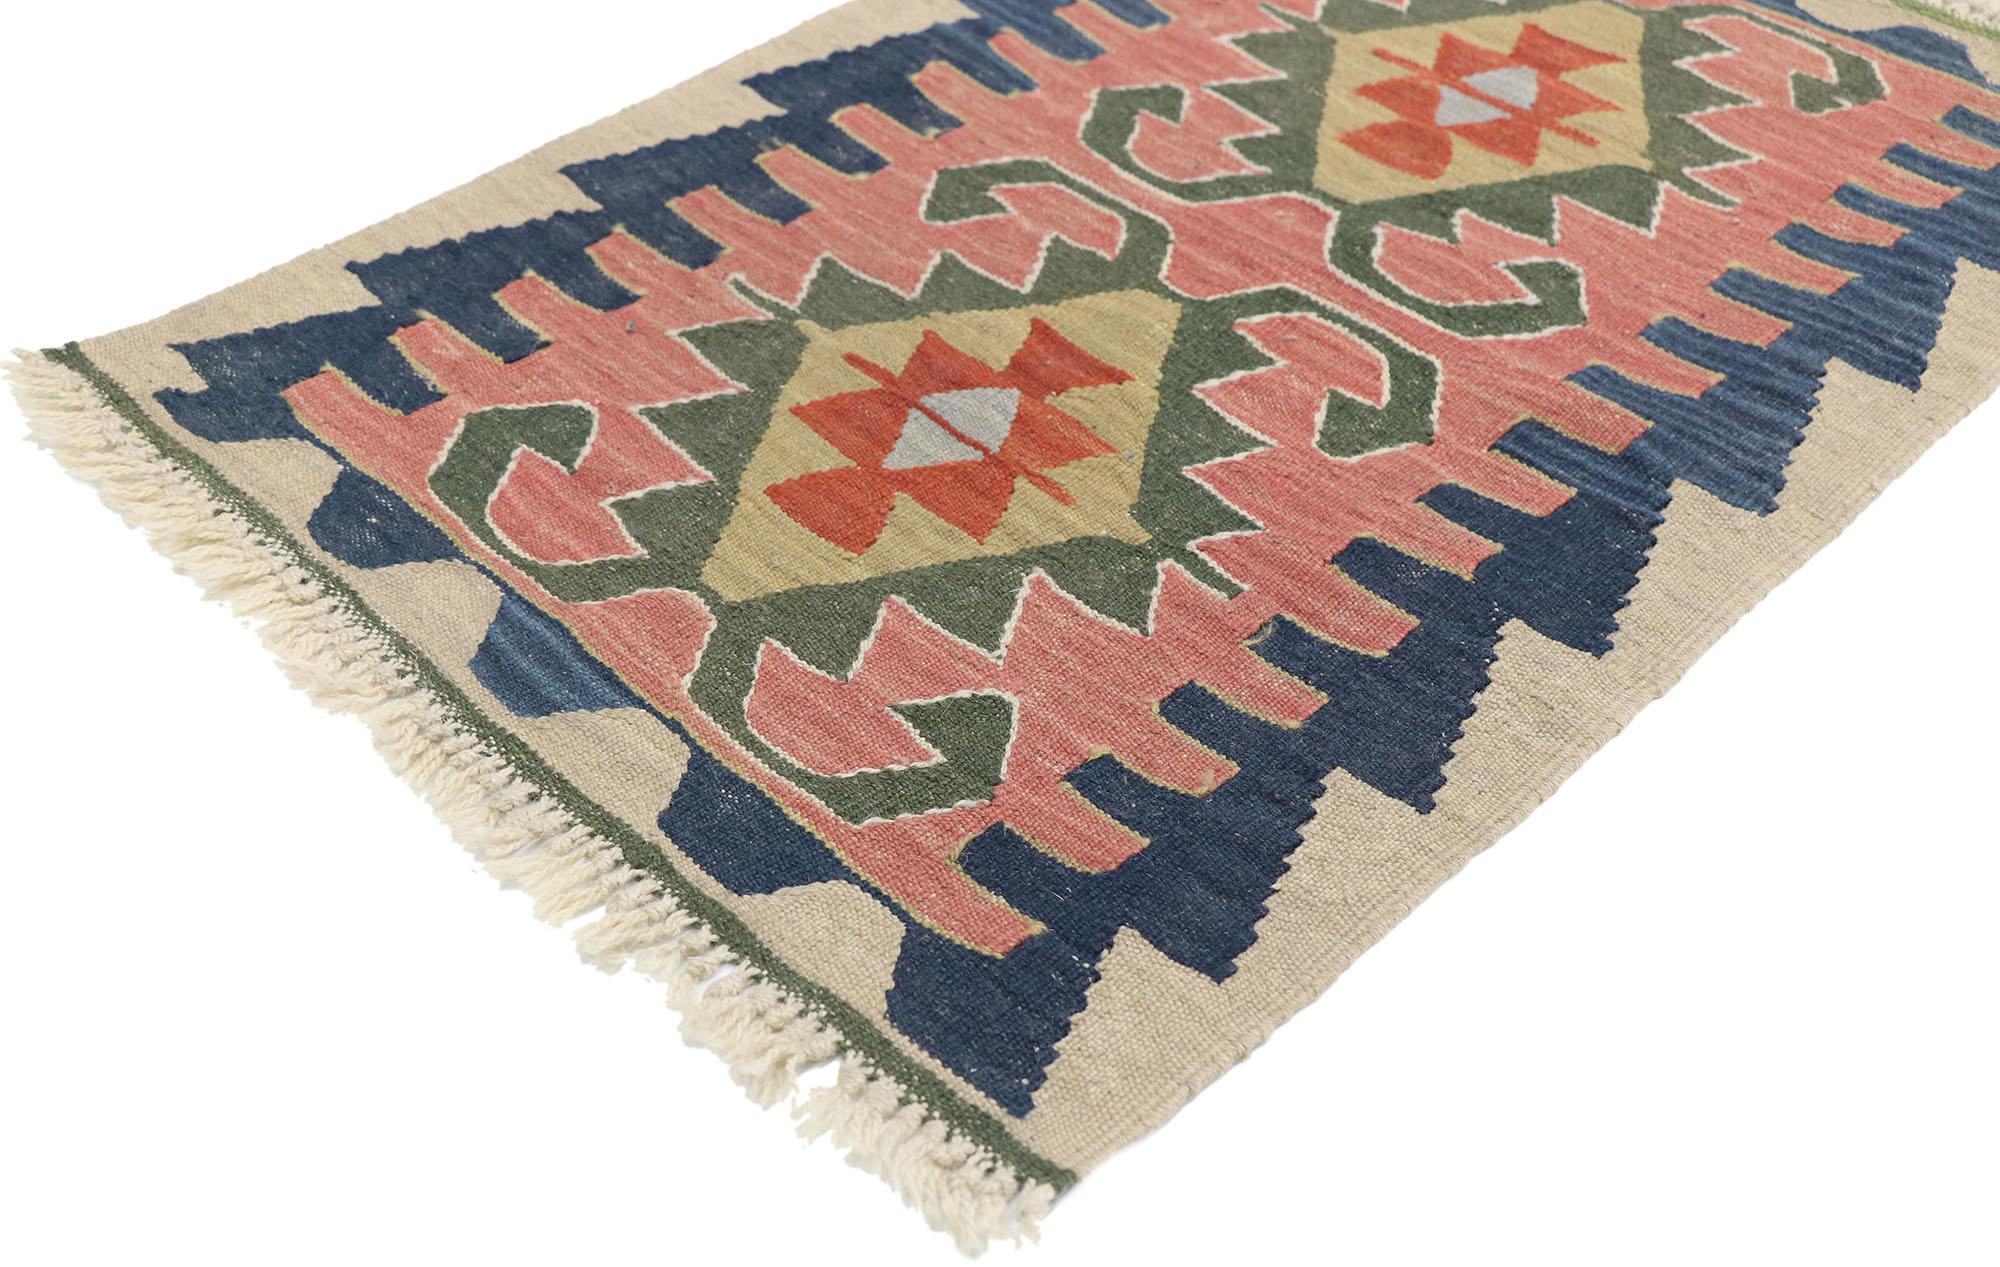 77897, alter persischer Shiraz-Kilim-Teppich mit böhmischem Tribal-Stil. Voller winziger Details und einem kühnen, ausdrucksstarken Design, kombiniert mit leuchtenden Farben und einem Stammesstil, ist dieser handgewebte, alte persische Shiraz-Kelim